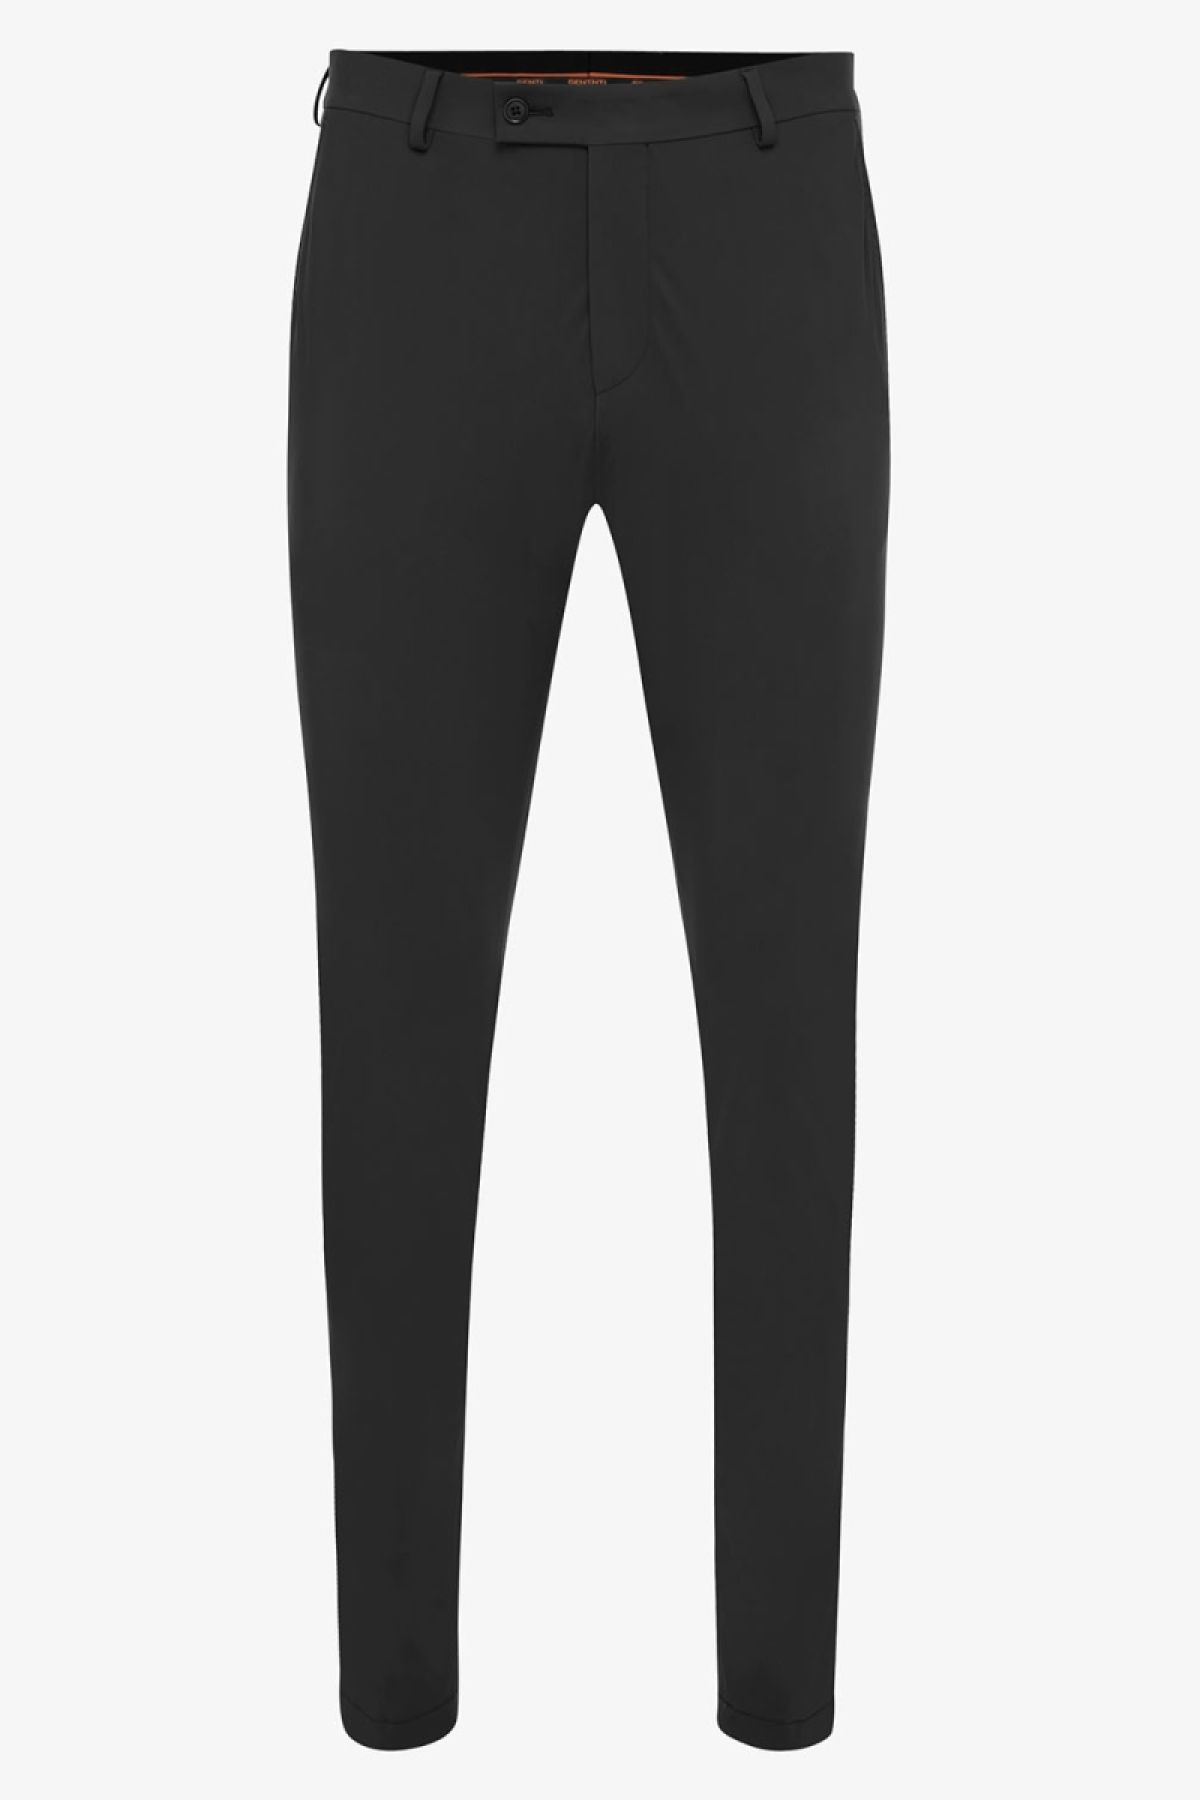 Dynamic stretch pantalon zwart